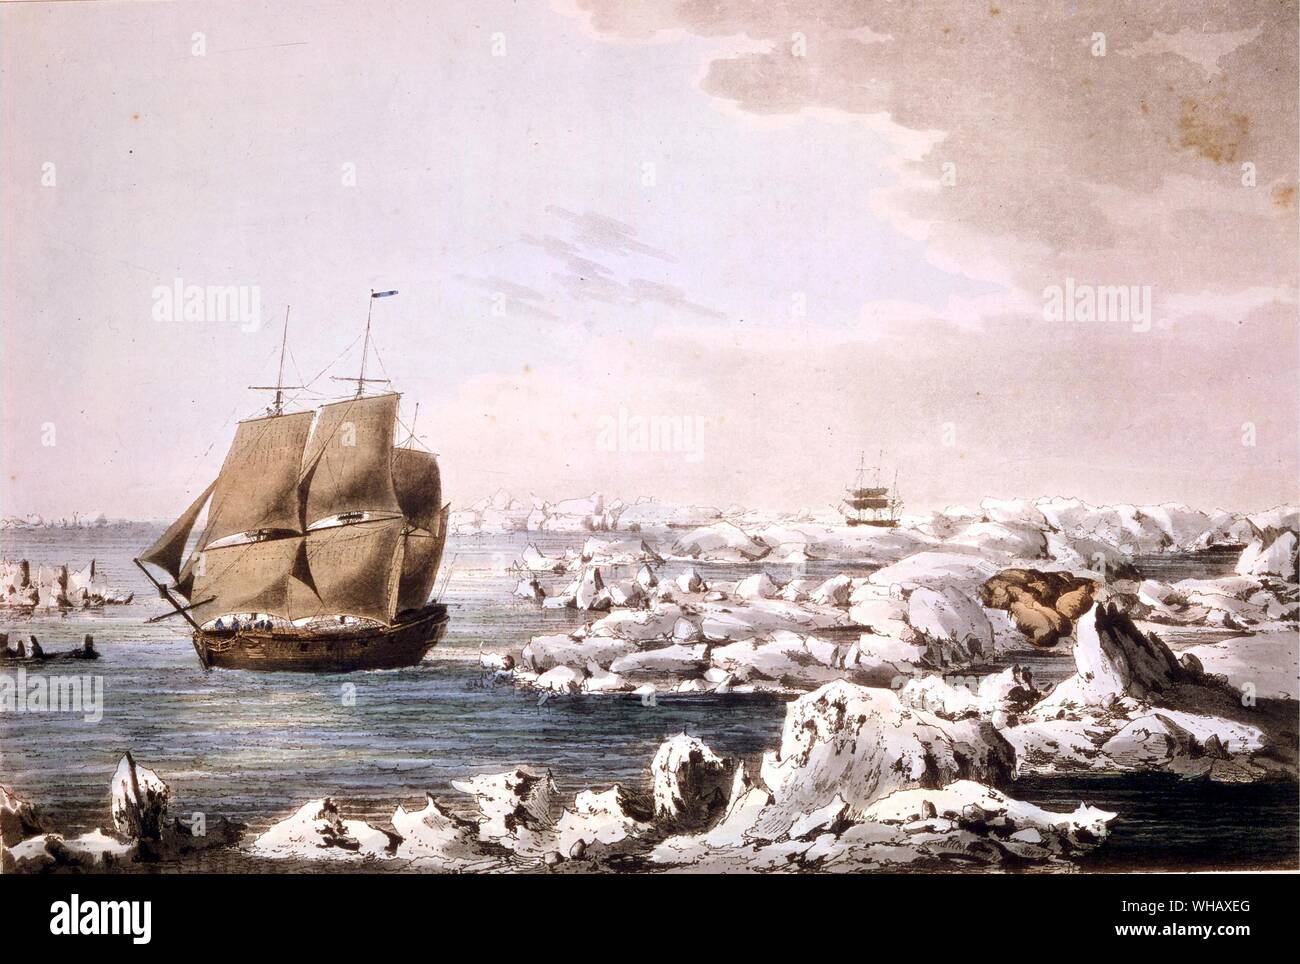 Dettaglio della risoluzione battendo attraverso il ghiaccio, con la scoperta nella maggior parte pericolo imminente nella distanza da John Webber, (1752-1793). Antartide: l'ultimo continente da Ian Cameron, pagina 38. La risoluzione è stata responsabile per alcuni pregevoli prodezze ed era di provare uno dei grandi navi della storia. Essa fu la prima nave per attraversare il Circolo Antartico (17 gennaio 1773) e attraversare due volte di più sul viaggio. Il terzo attraversamento del 3 febbraio 1774, è stata la più profonda penetrazione. Di conseguenza la risoluzione è stato strumentale nel provare a Dalrymple la Terra Australis incognita (Sud Foto Stock